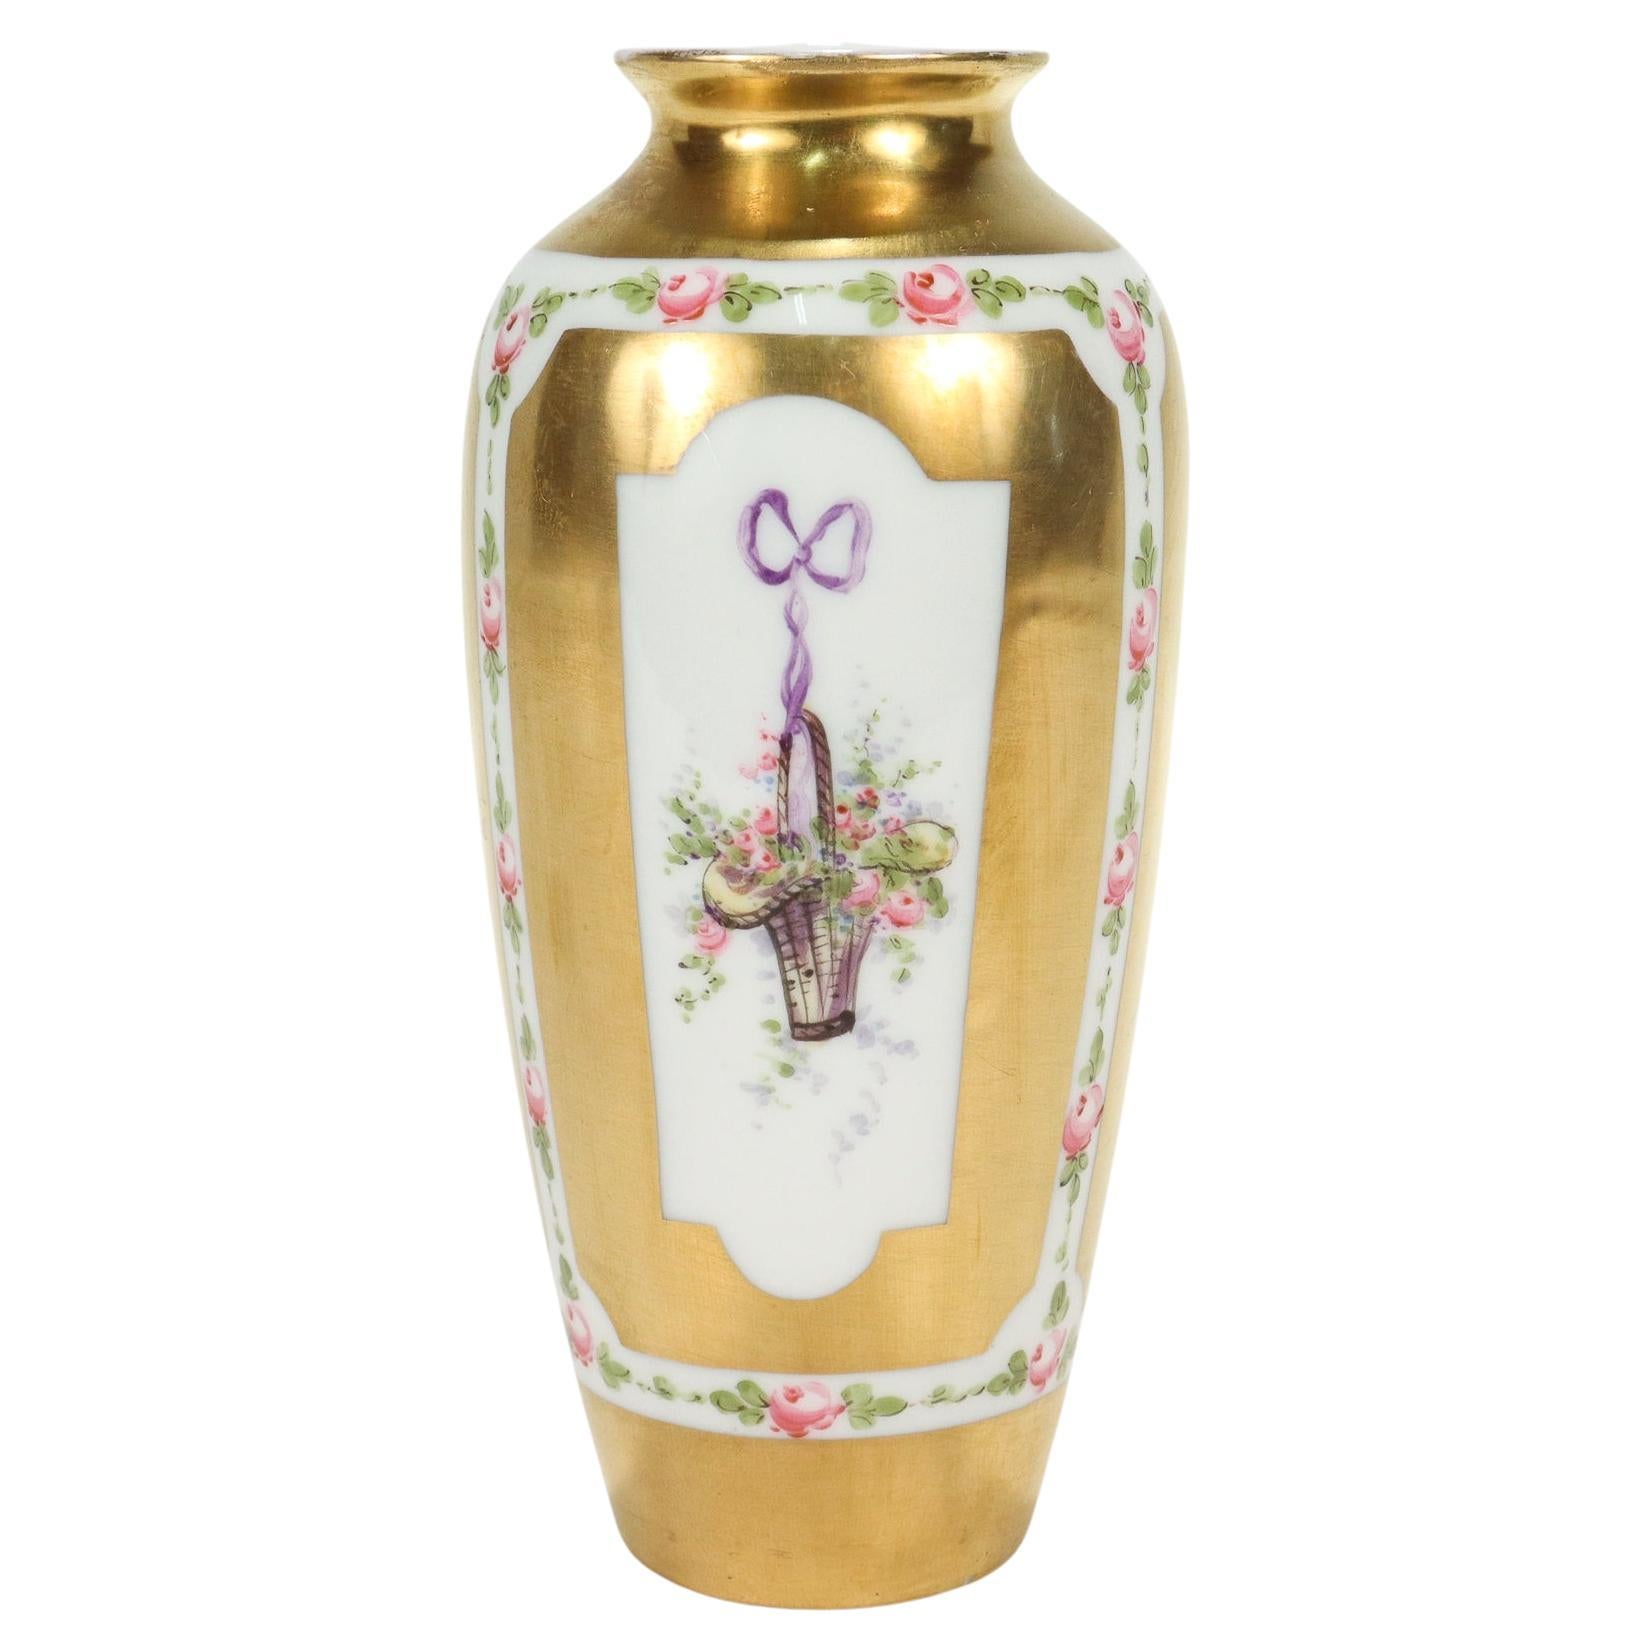 Vase en porcelaine dorée de type Sèvres avec paniers de fleurs et rubans peints à la main